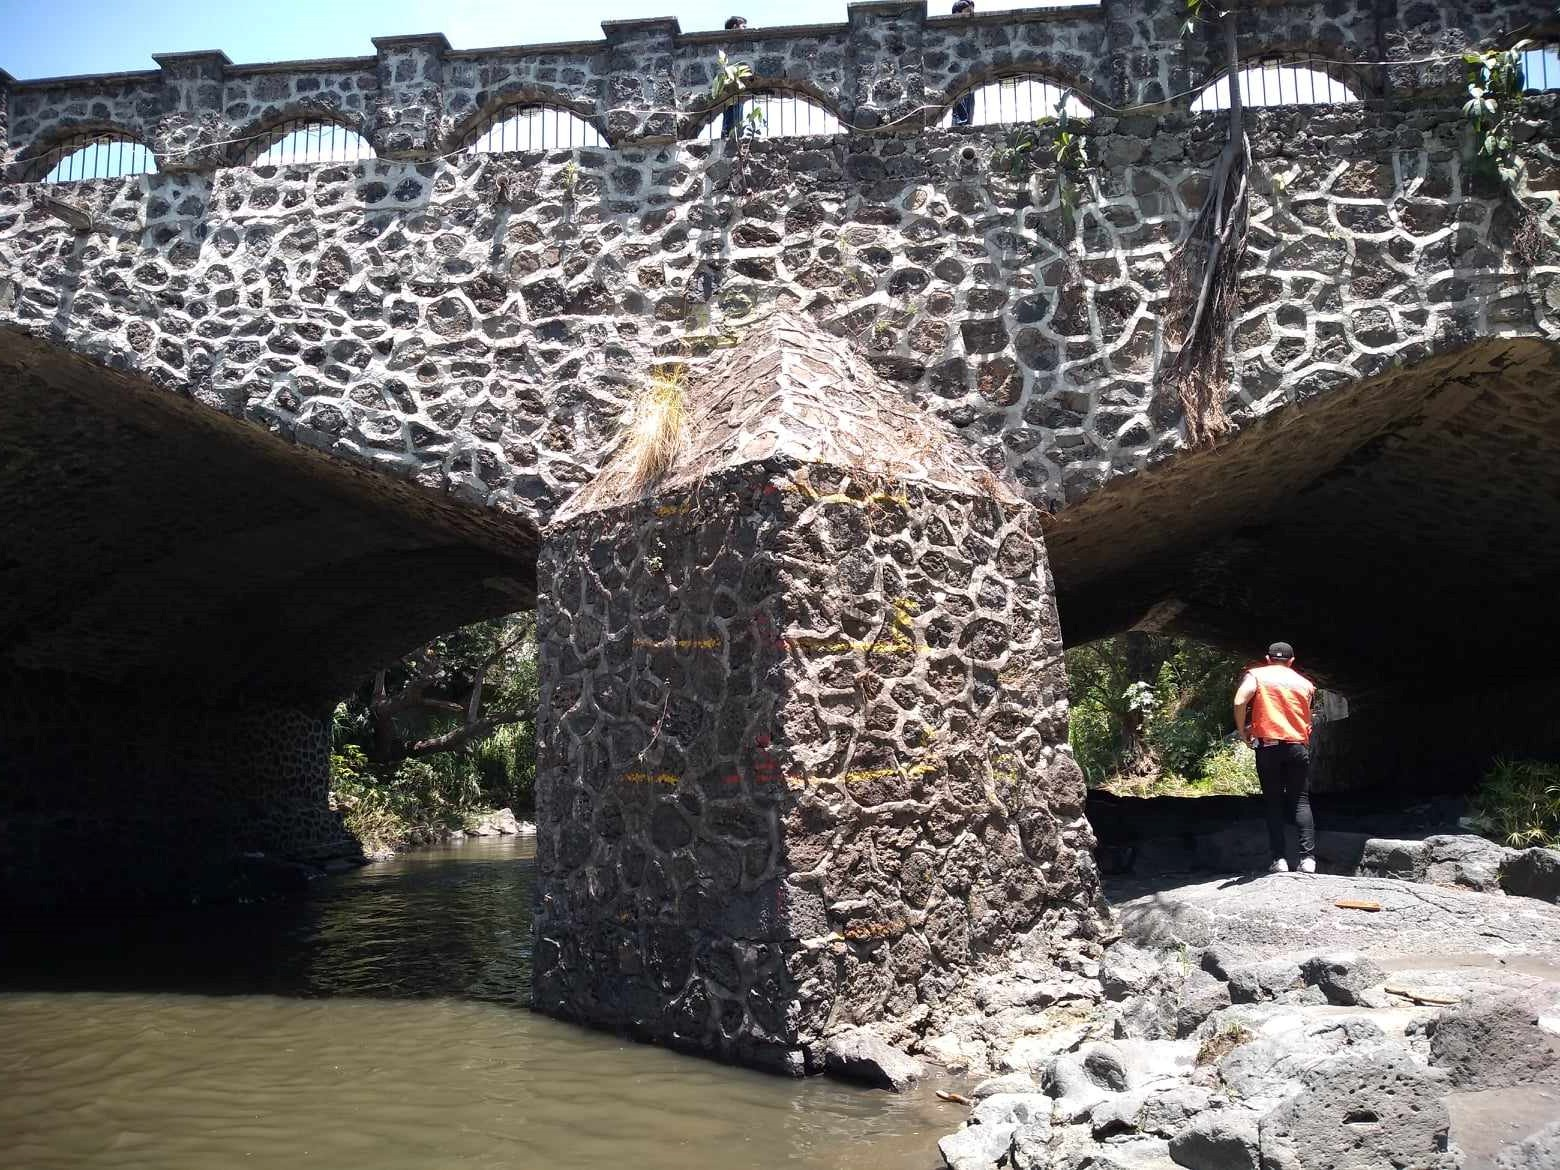 Puente de piedra sobre una roca

Descripción generada automáticamente con confianza baja